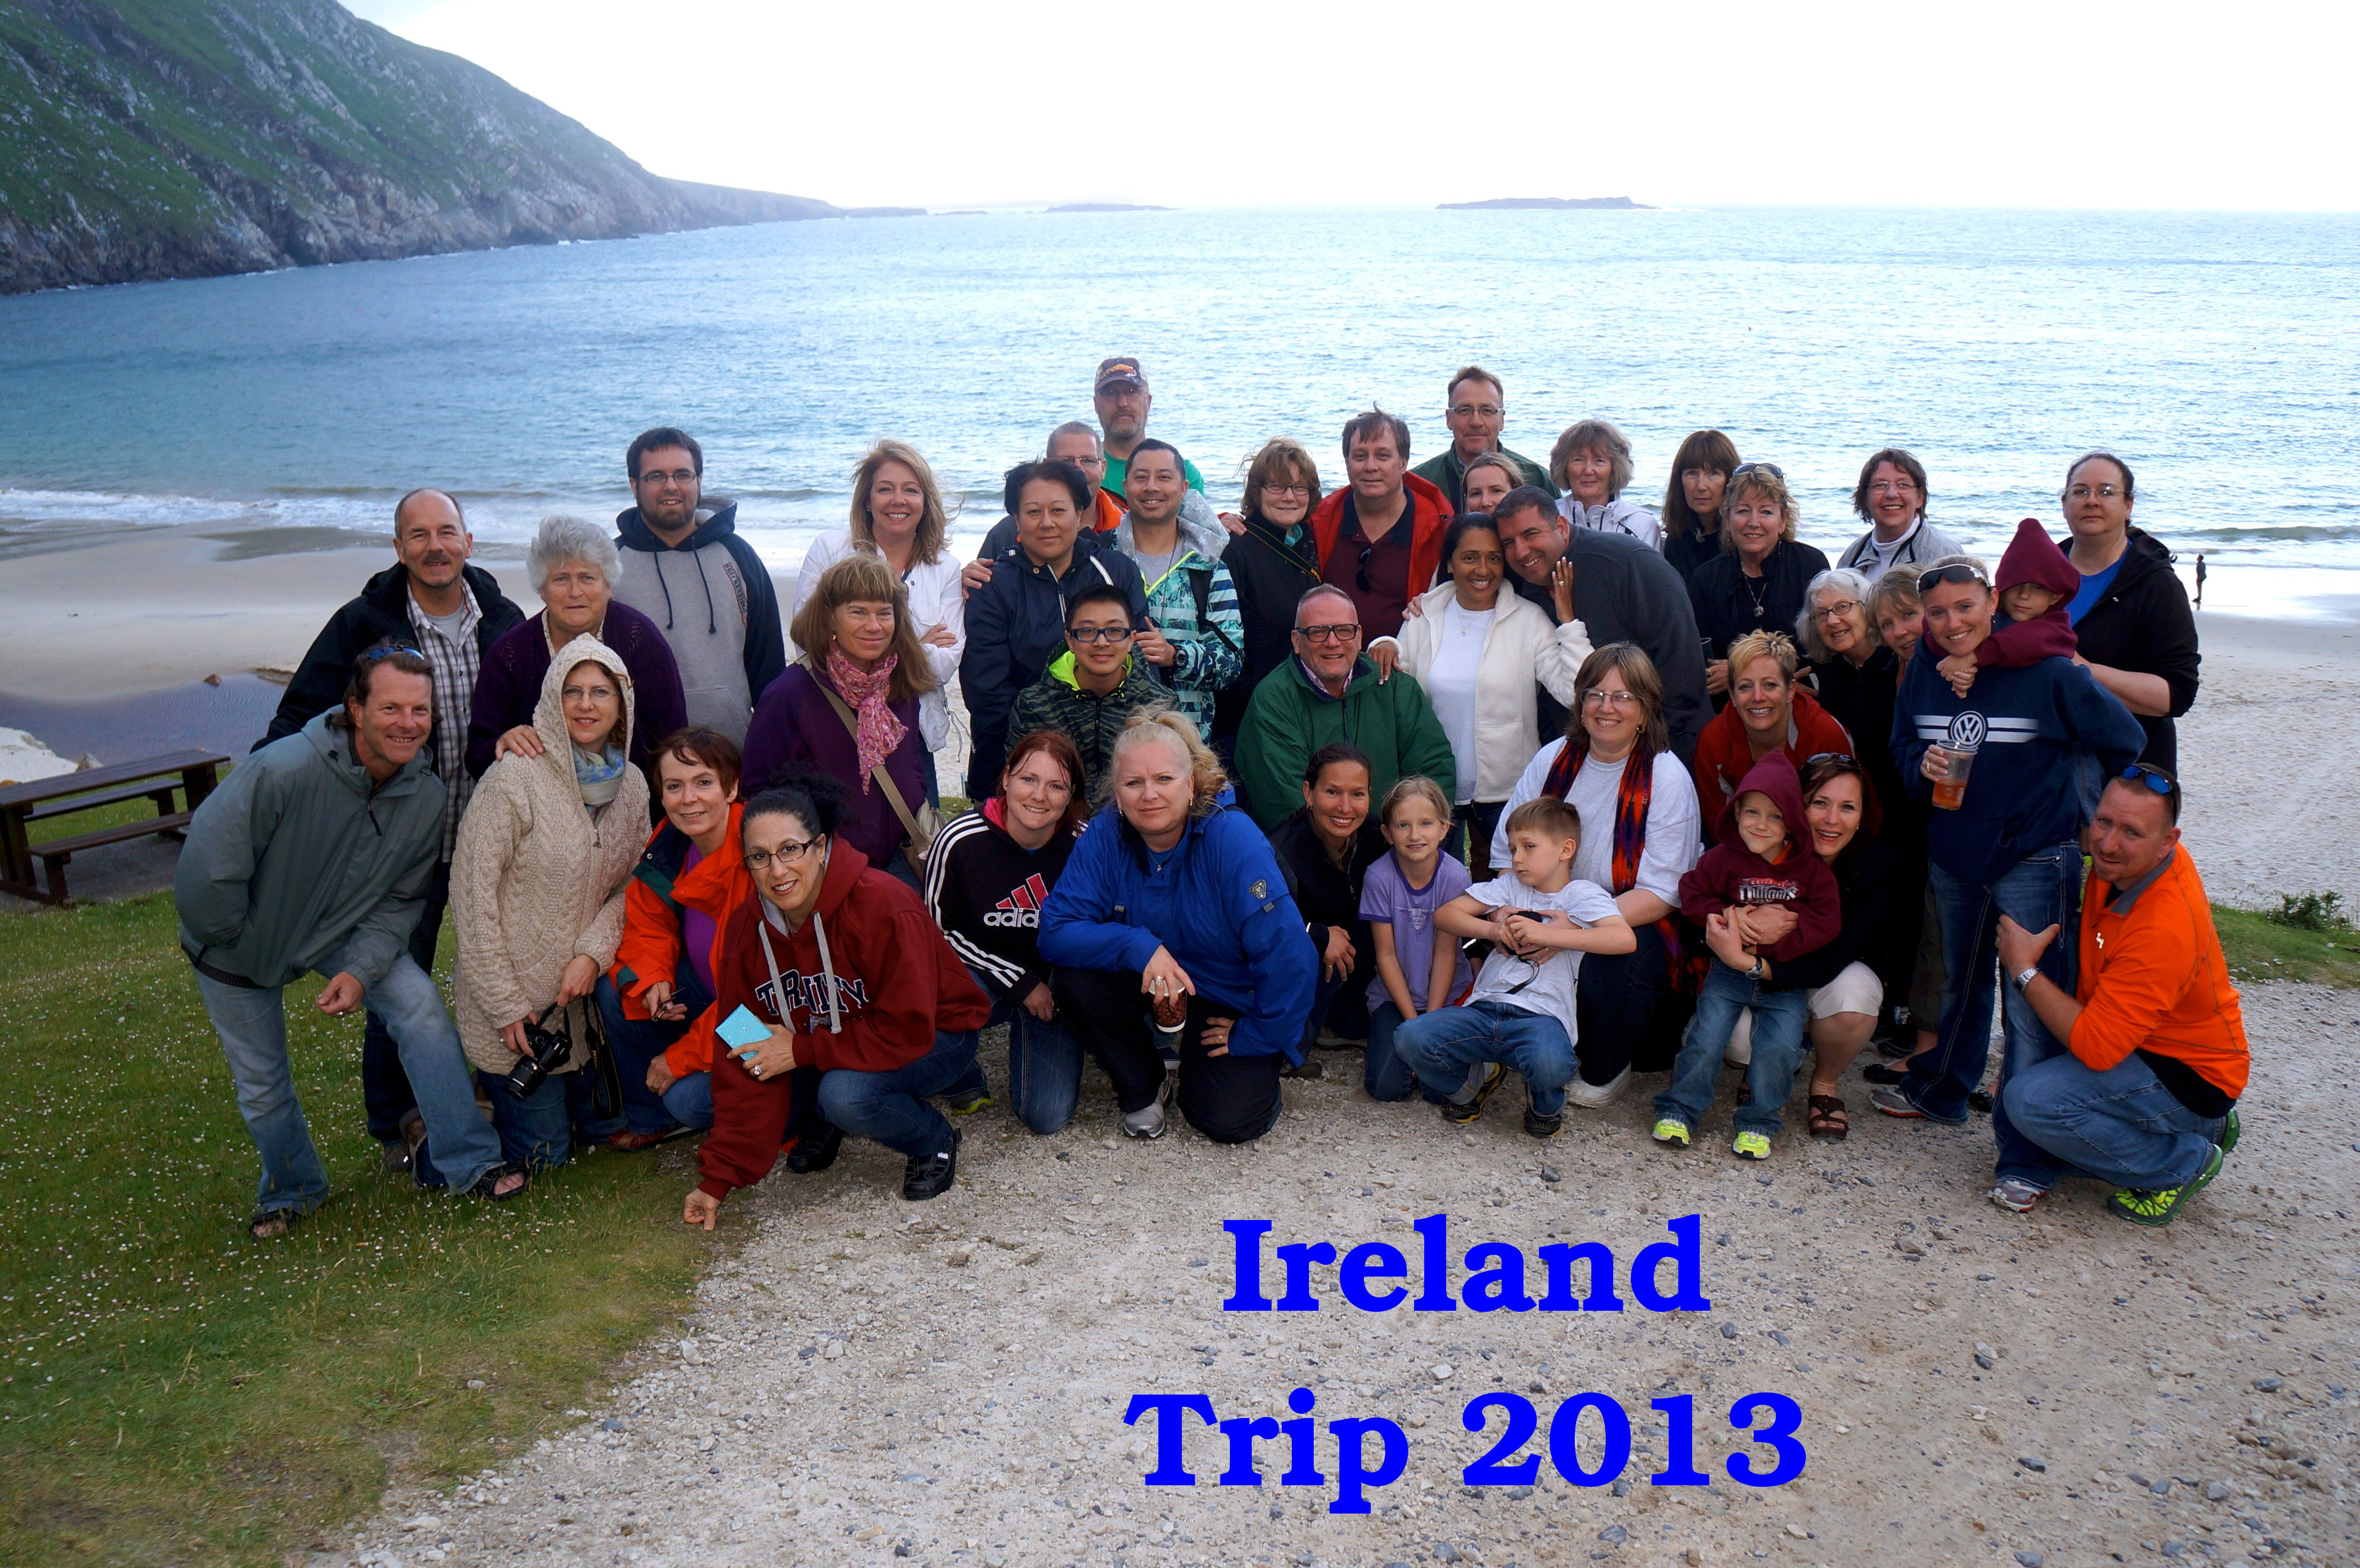 Busausflug nach Irland Juli 2013